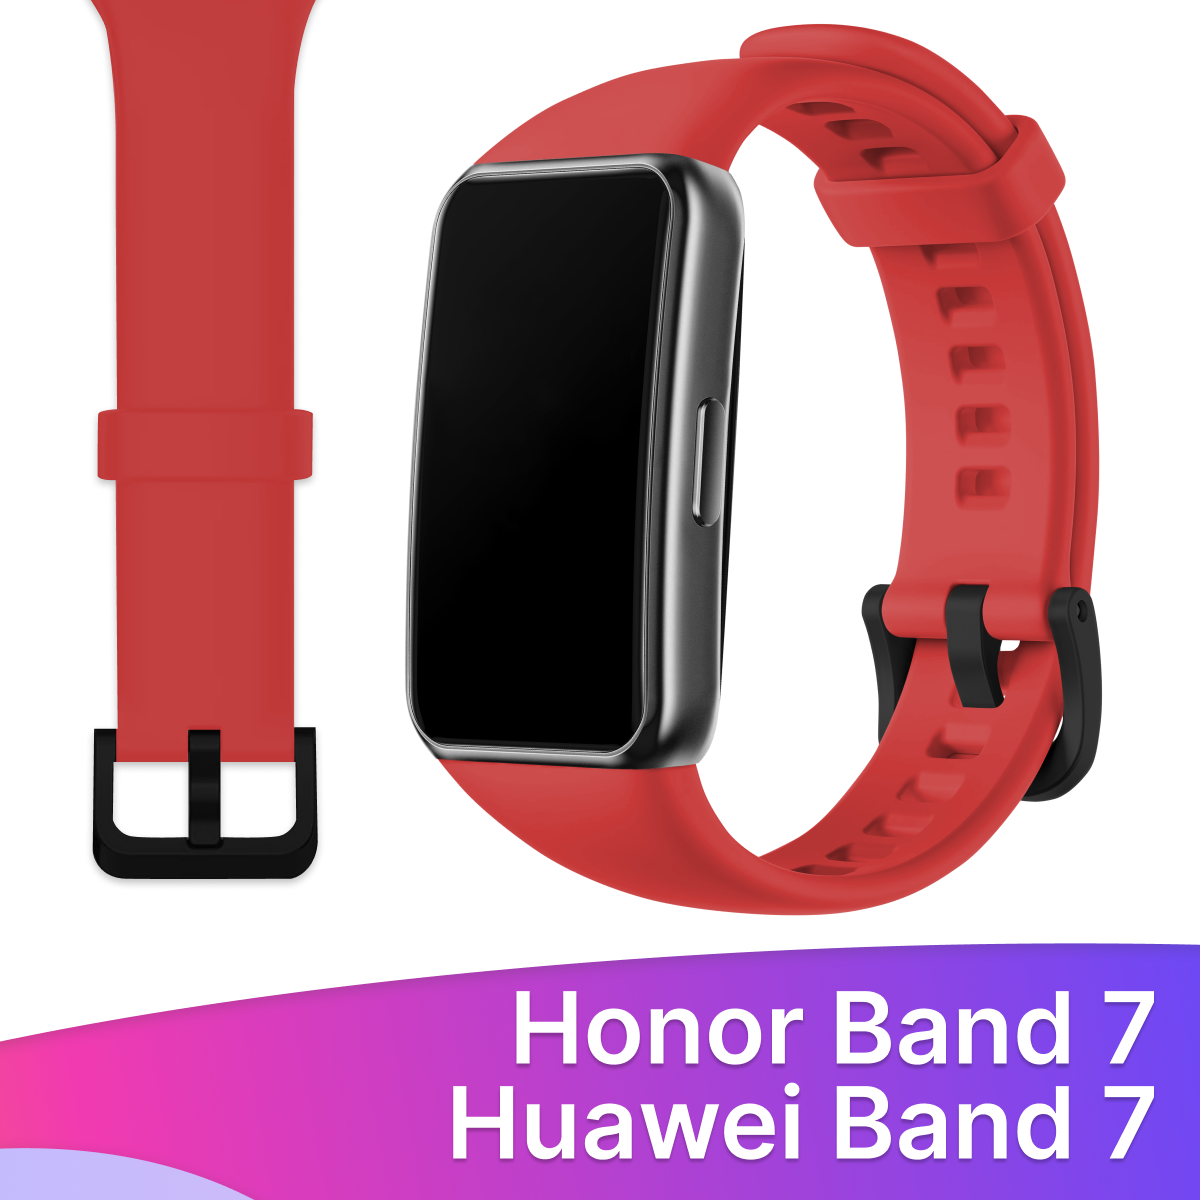 Силиконовый ремешок для Honor Band 7 и Huawei Band 7 / Сменный браслет для умных смарт часов / Фитнес трекера Хонор и Хуавей Бэнд 7, Красный